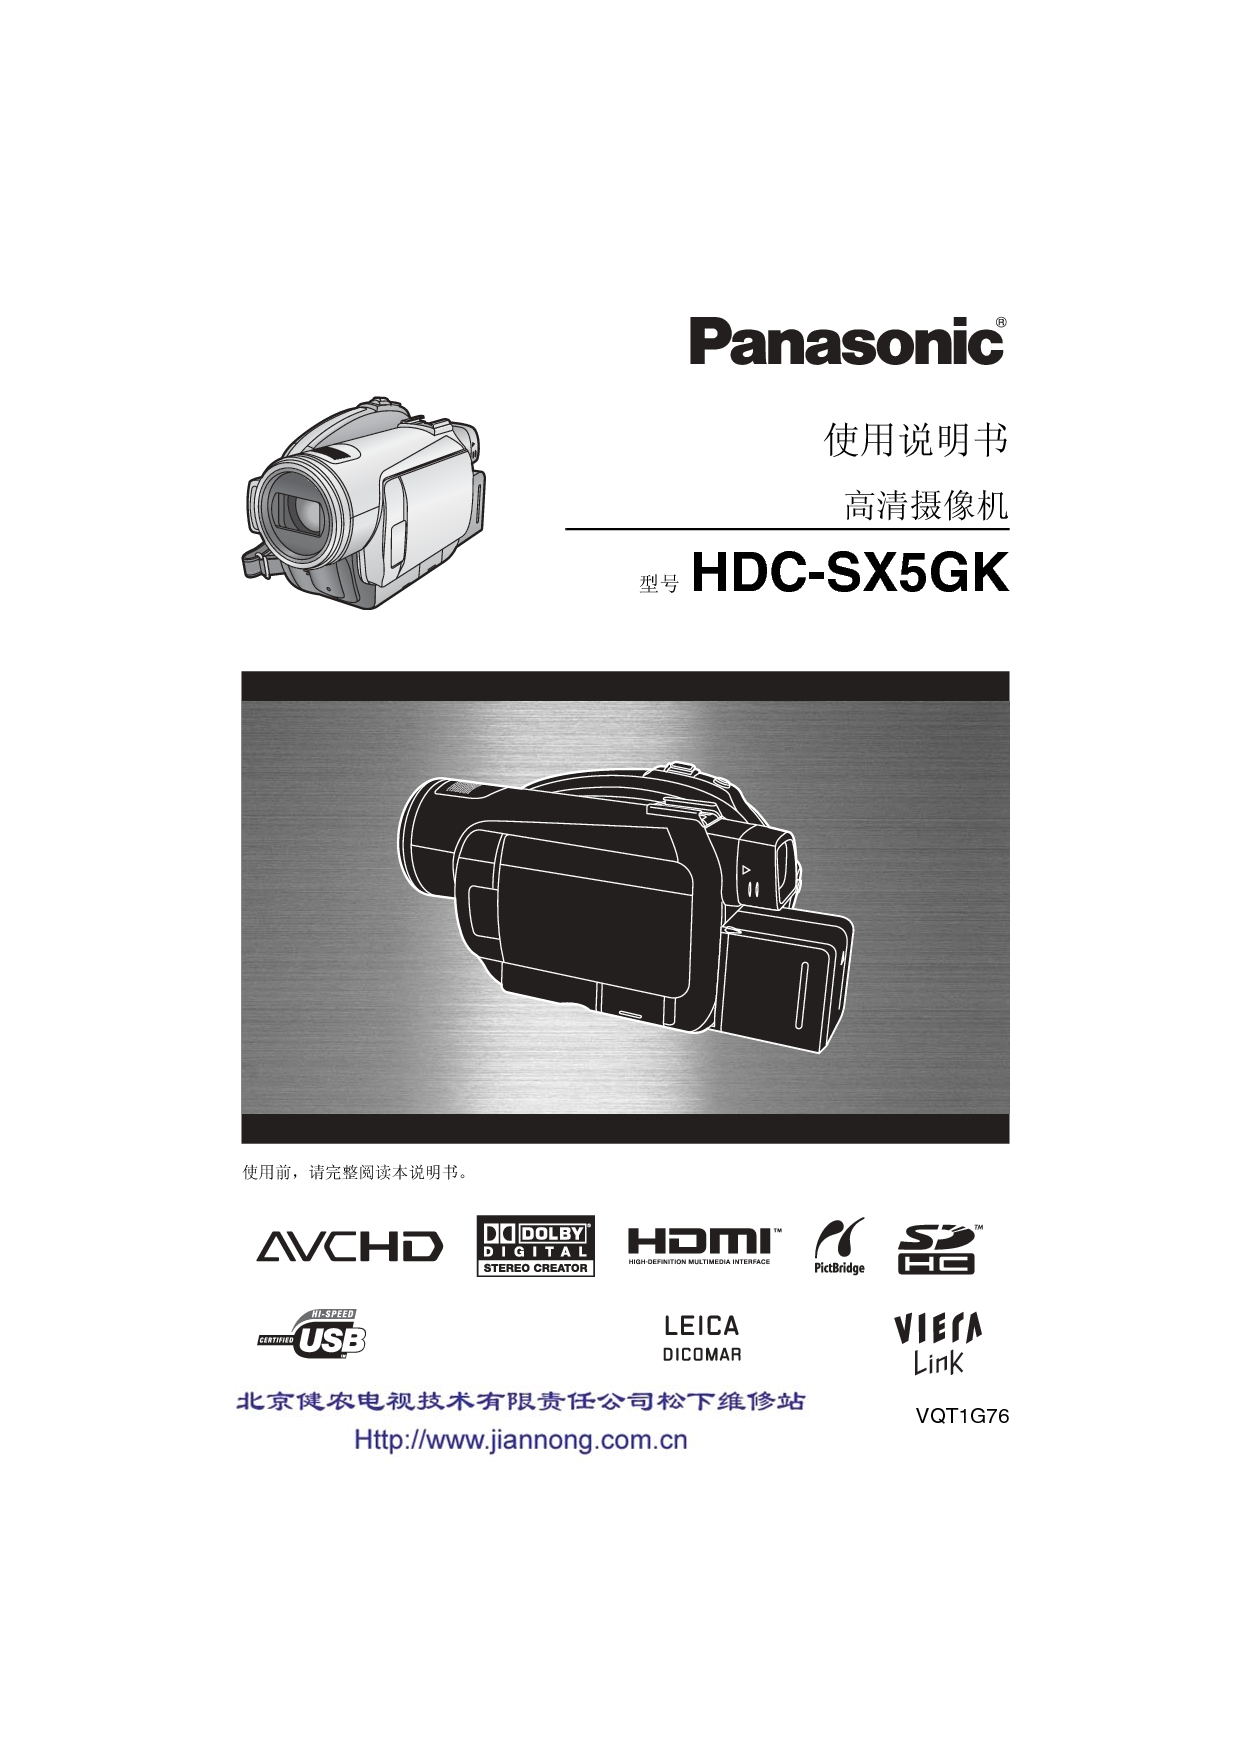 松下 Panasonic HDC-SX5GK 说明书 封面